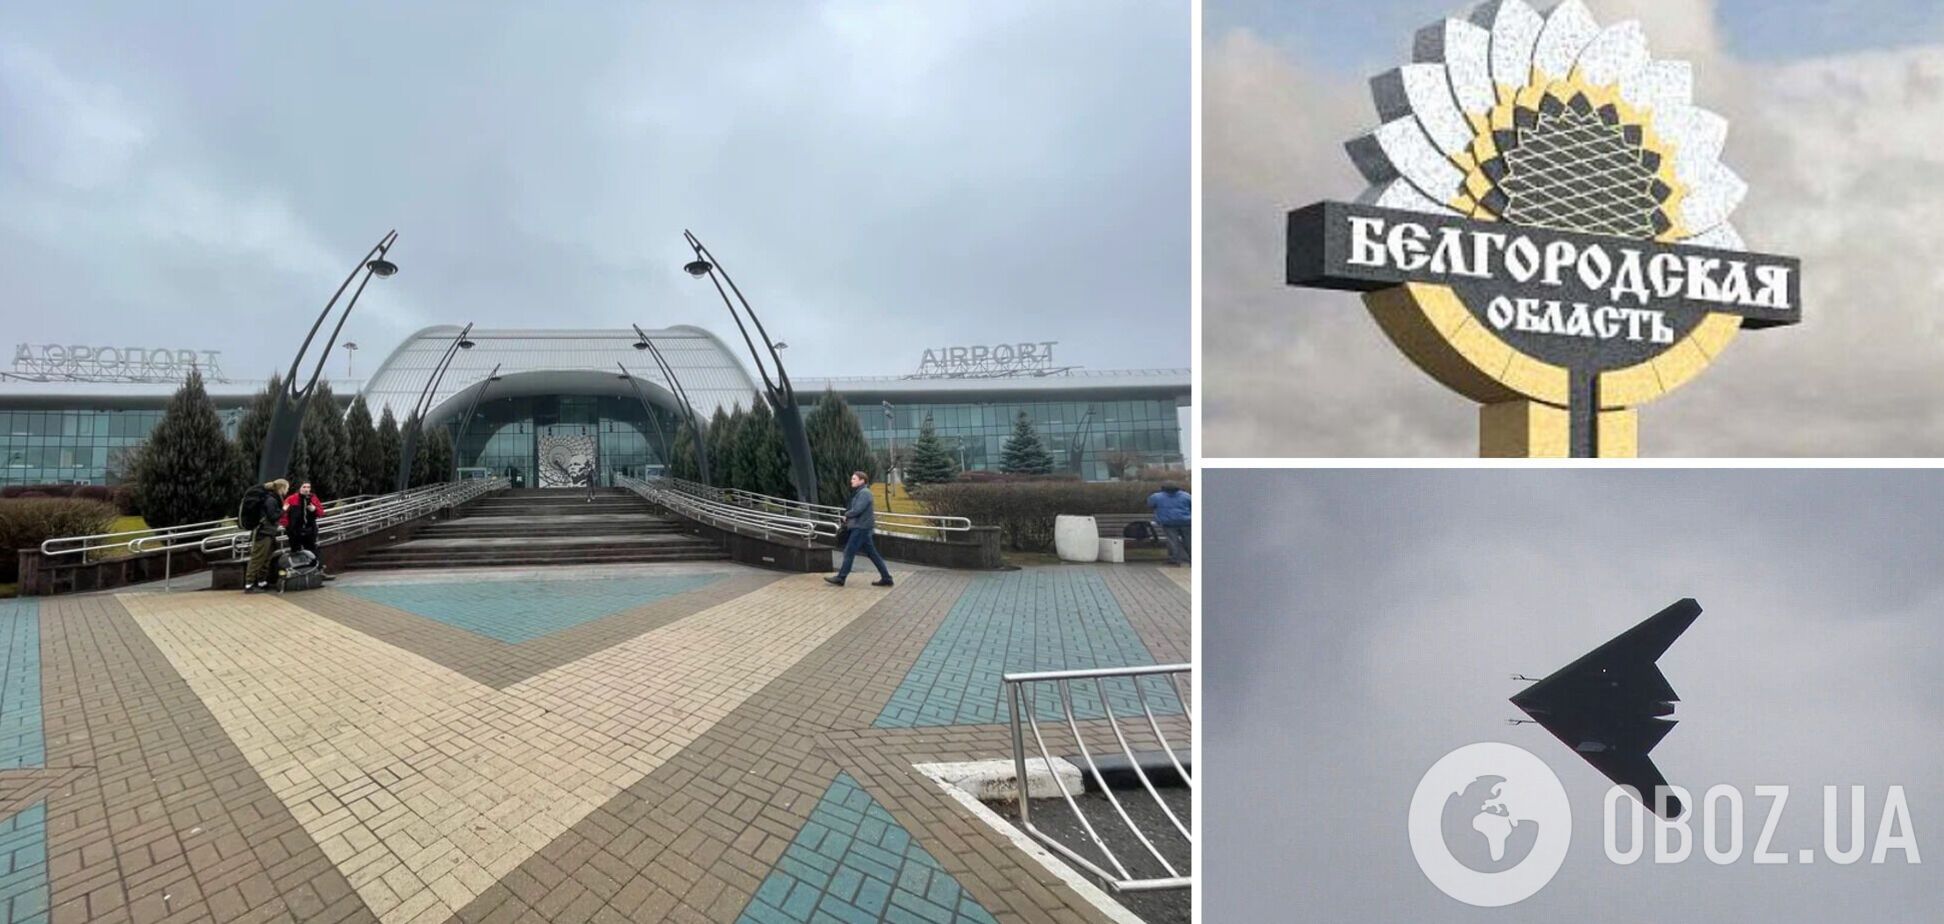 Врізався в паркан і вибухнув: у Бєлгороді заявили про атаку БПЛА на аеропорт